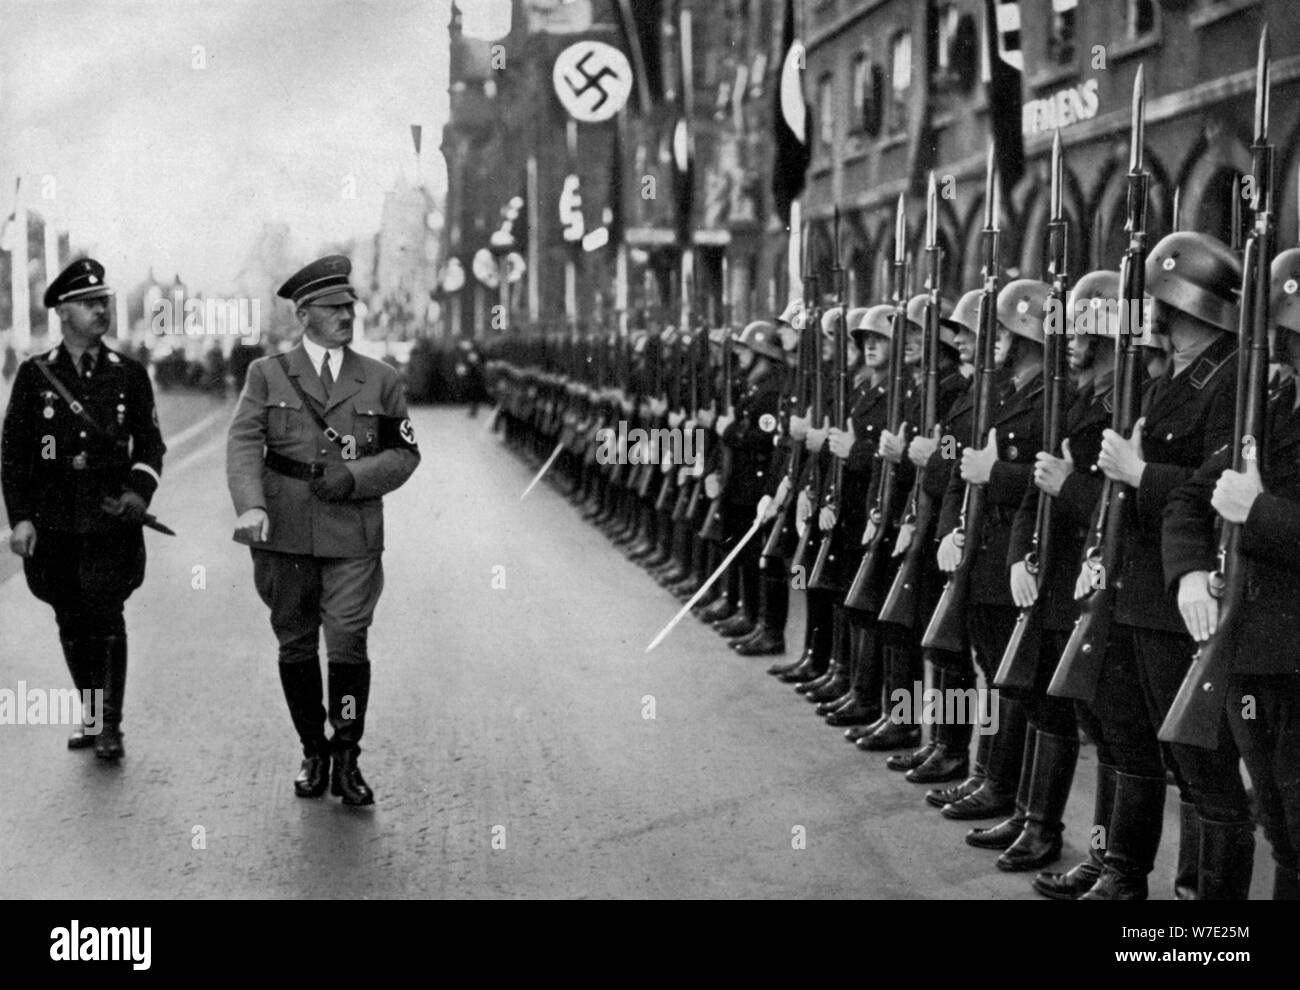 Revue des troupes d'Adolf Hitler Leibstandarte au congrès de Nuremberg, Allemagne, 1935. Artiste : Inconnu Banque D'Images